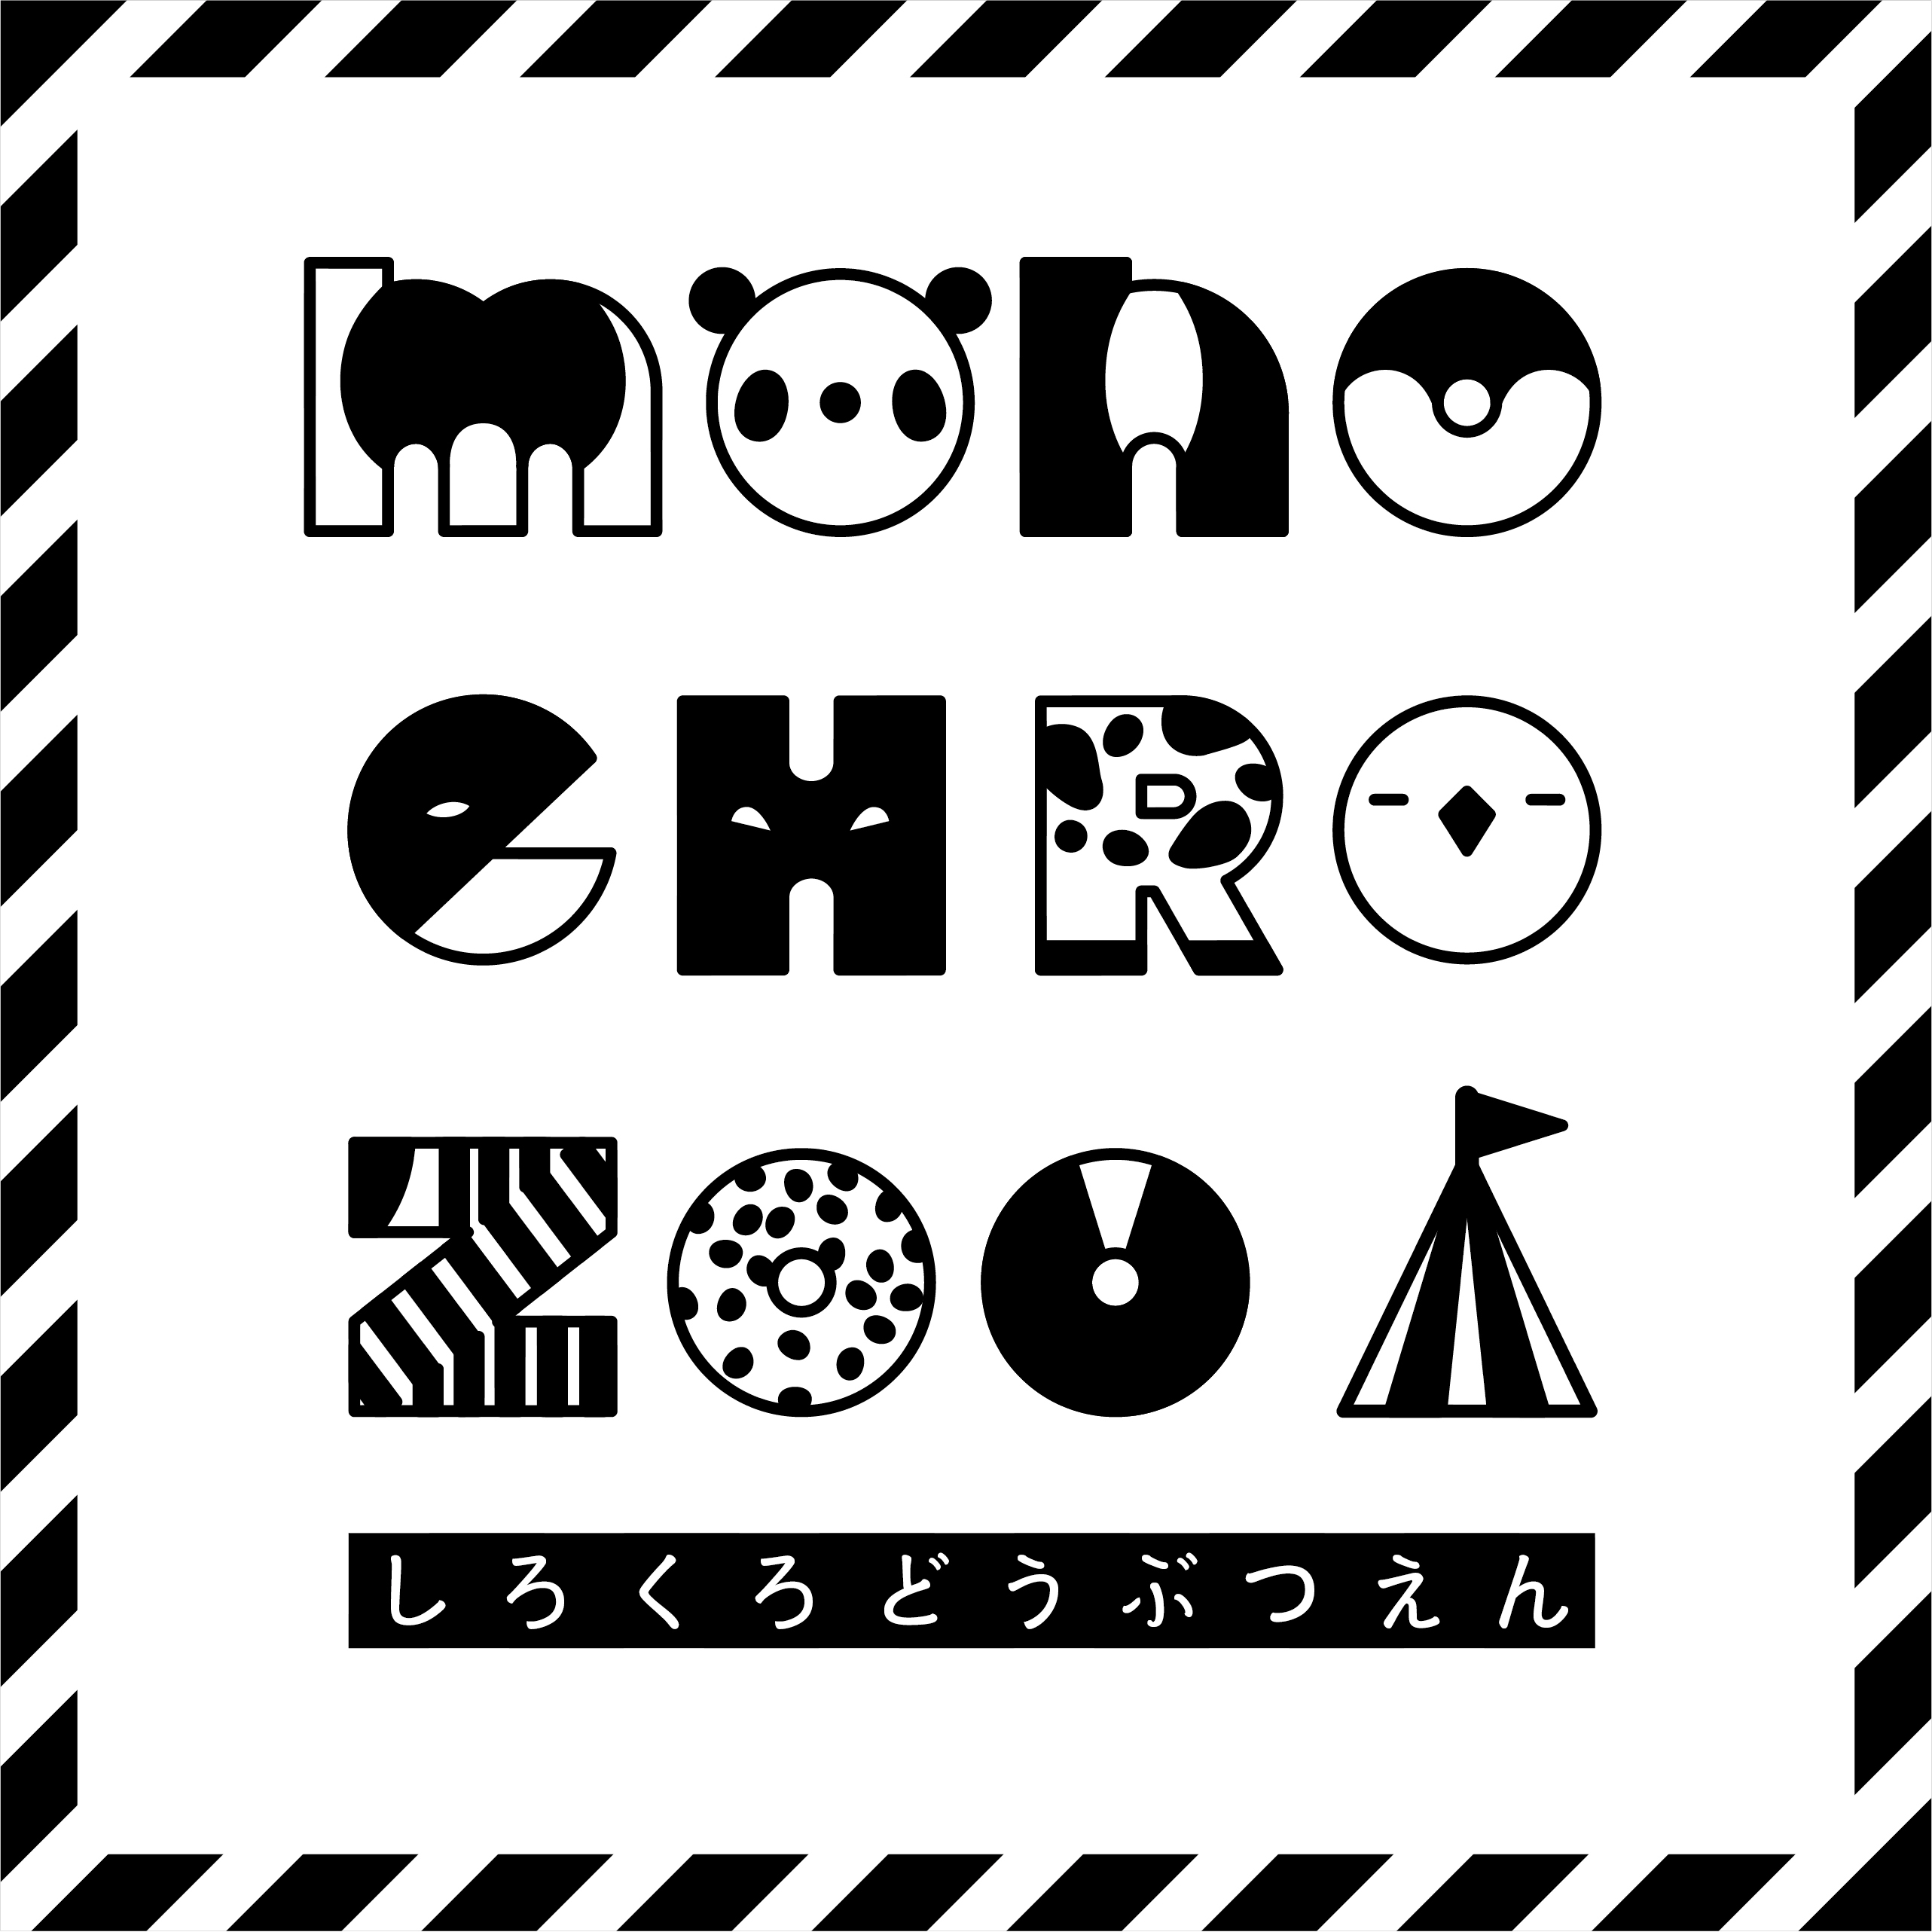 2017年9月15日(金)〜29日(木)に東急ハンズ池袋店1F「monochro zoo」に参加。